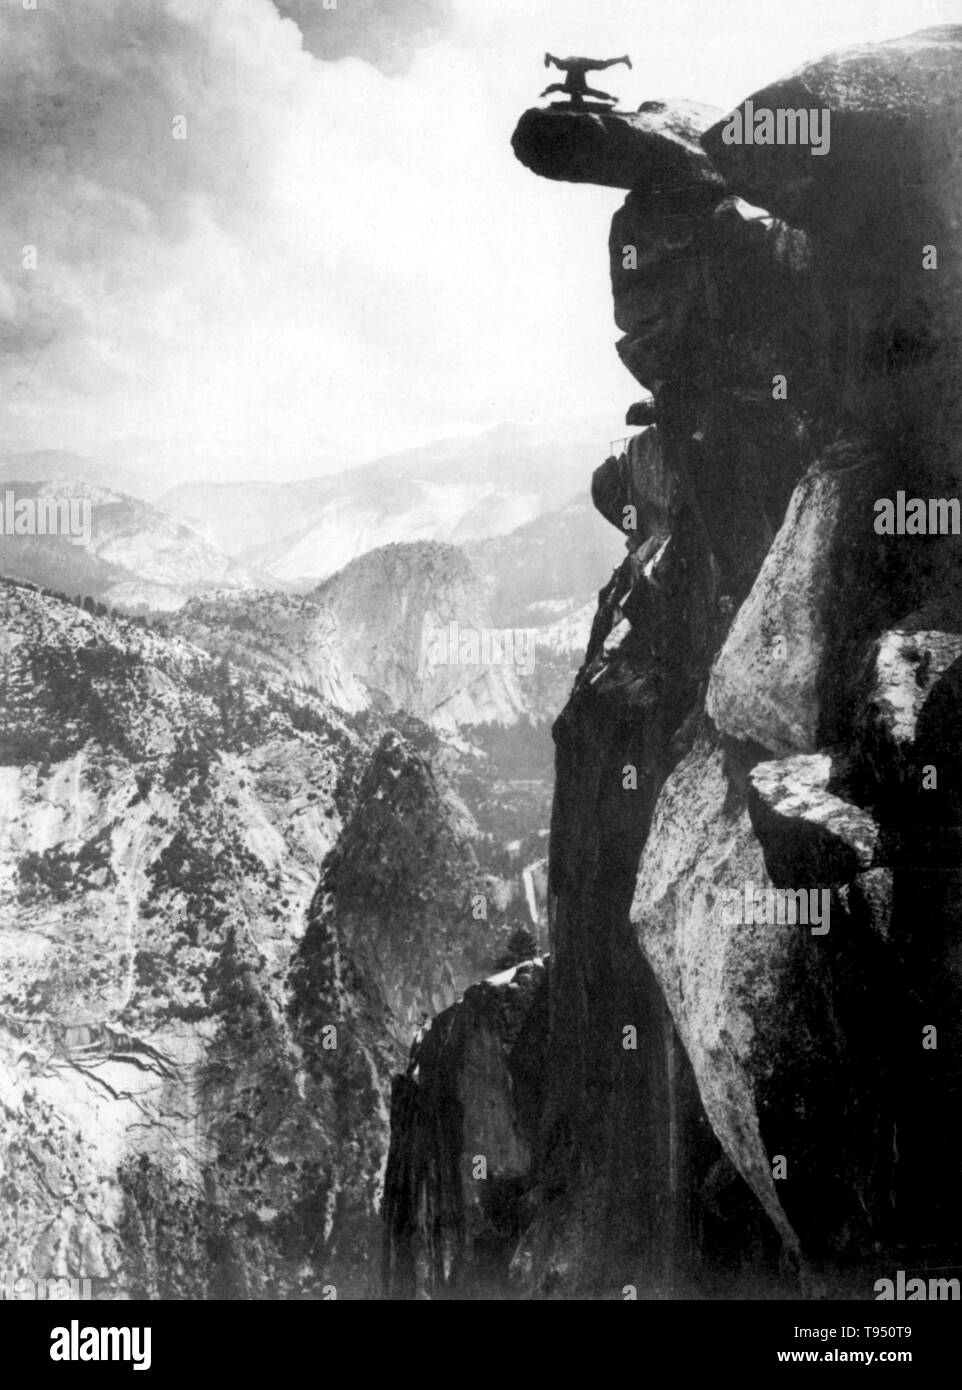 Joven equilibrada en cabeza en la cima glaciar Punto. Glacier Point es un mirador sobre el valle de Yosemite, en California, Estados Unidos. Se encuentra en la pared sur del valle de Yosemite a una altura de 7.214 pies. El punto ofrece una espléndida vista de varios de Yosemite National Park's conocidos monumentos como el valle de Yosemite, Cataratas de Yosemite, Half Dome, Vernal Fall, Fall, Nevada y el resto de las nubes. 1890s Foto de stock